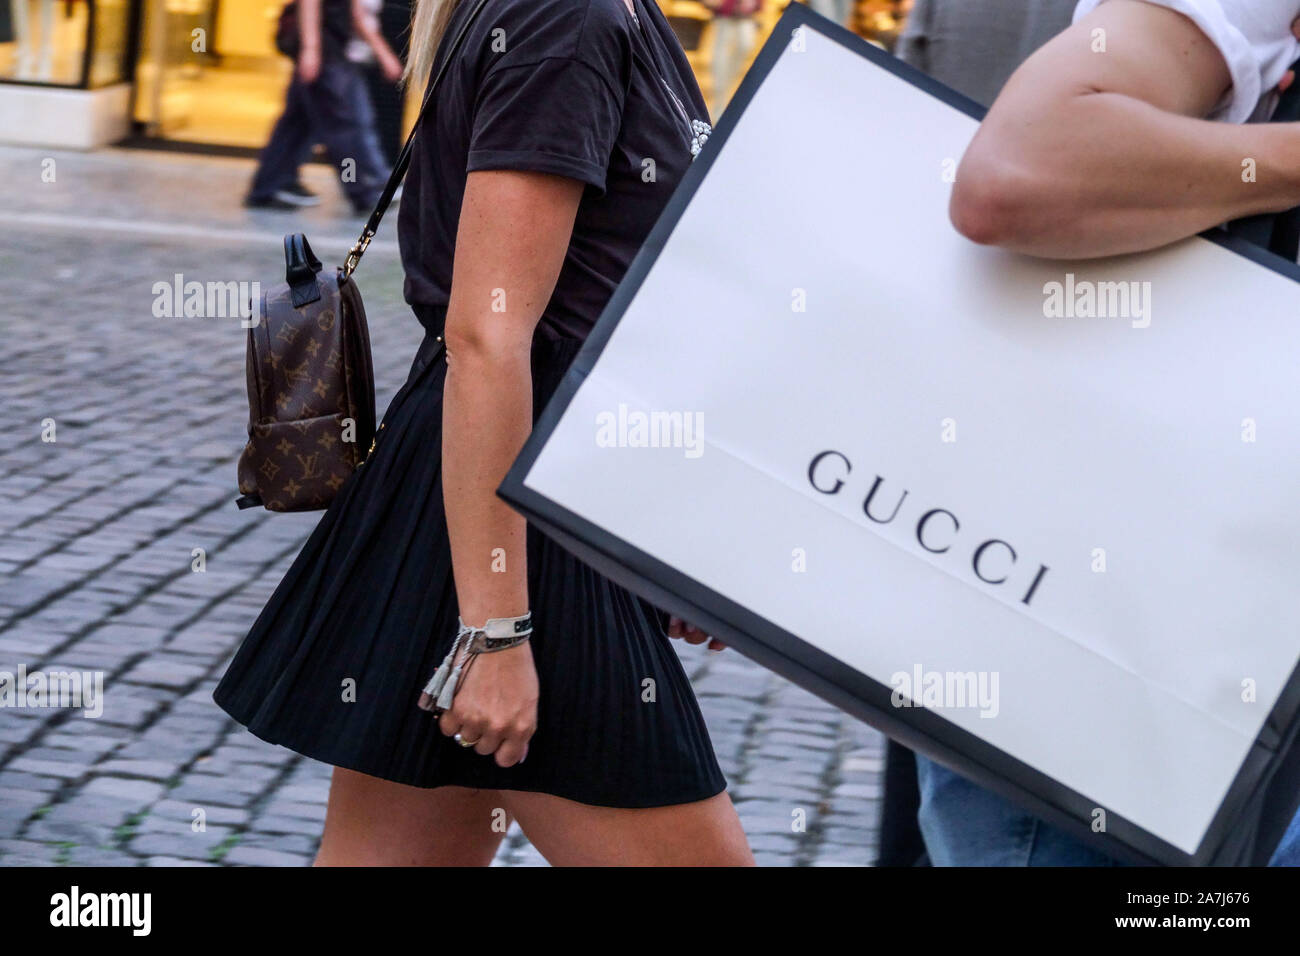 Gucci shoping Tasche in Prag in der Tschechischen Republik Stockfotografie  - Alamy